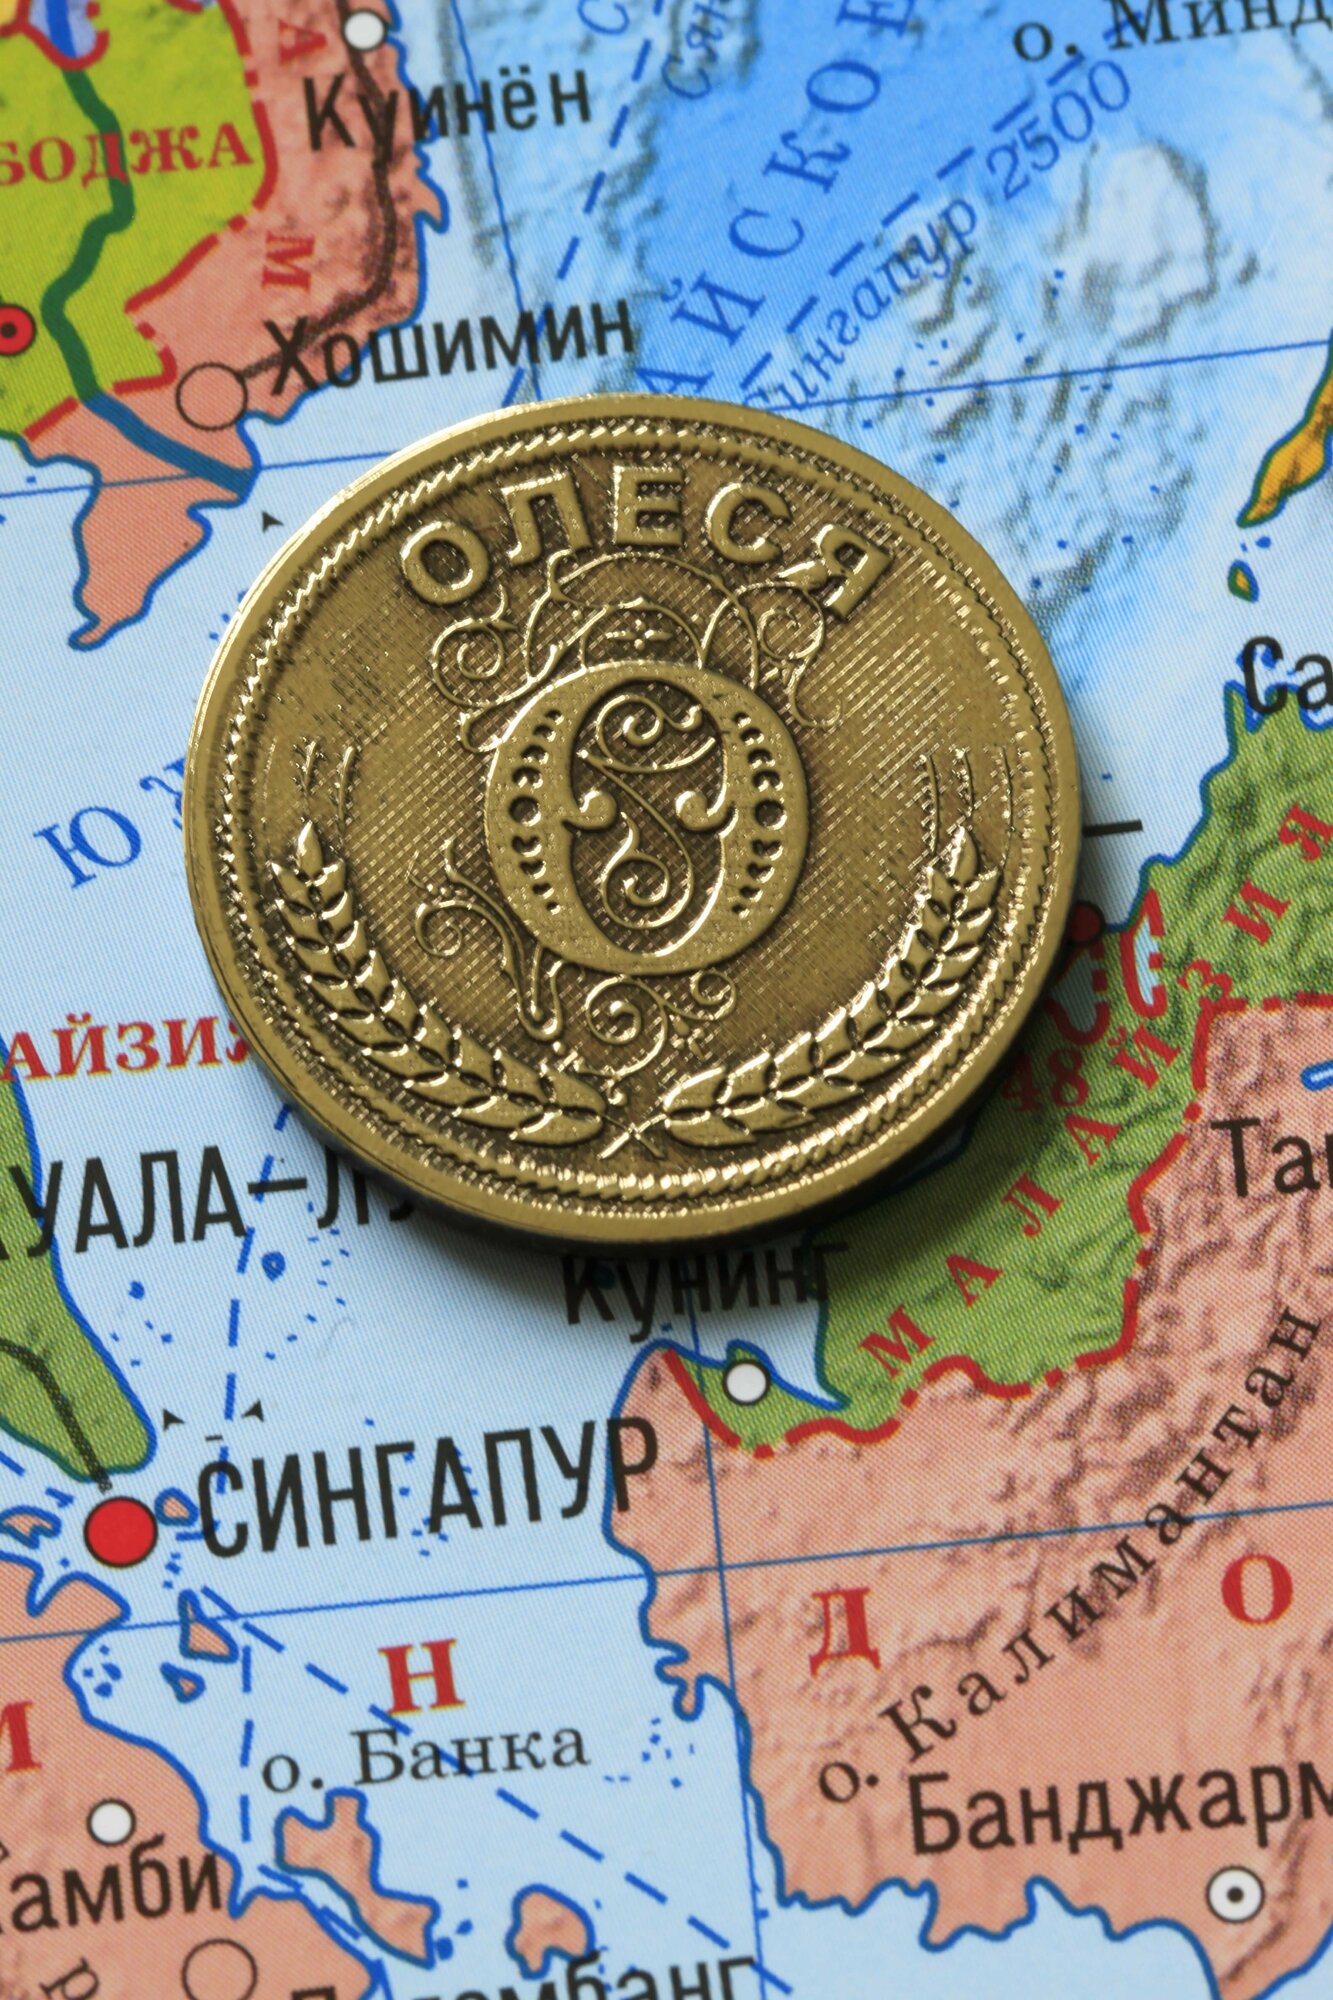 Именная оригинальна сувенирная монетка в подарок на богатство и удачу для женщины, девушки и девочки - Олеся